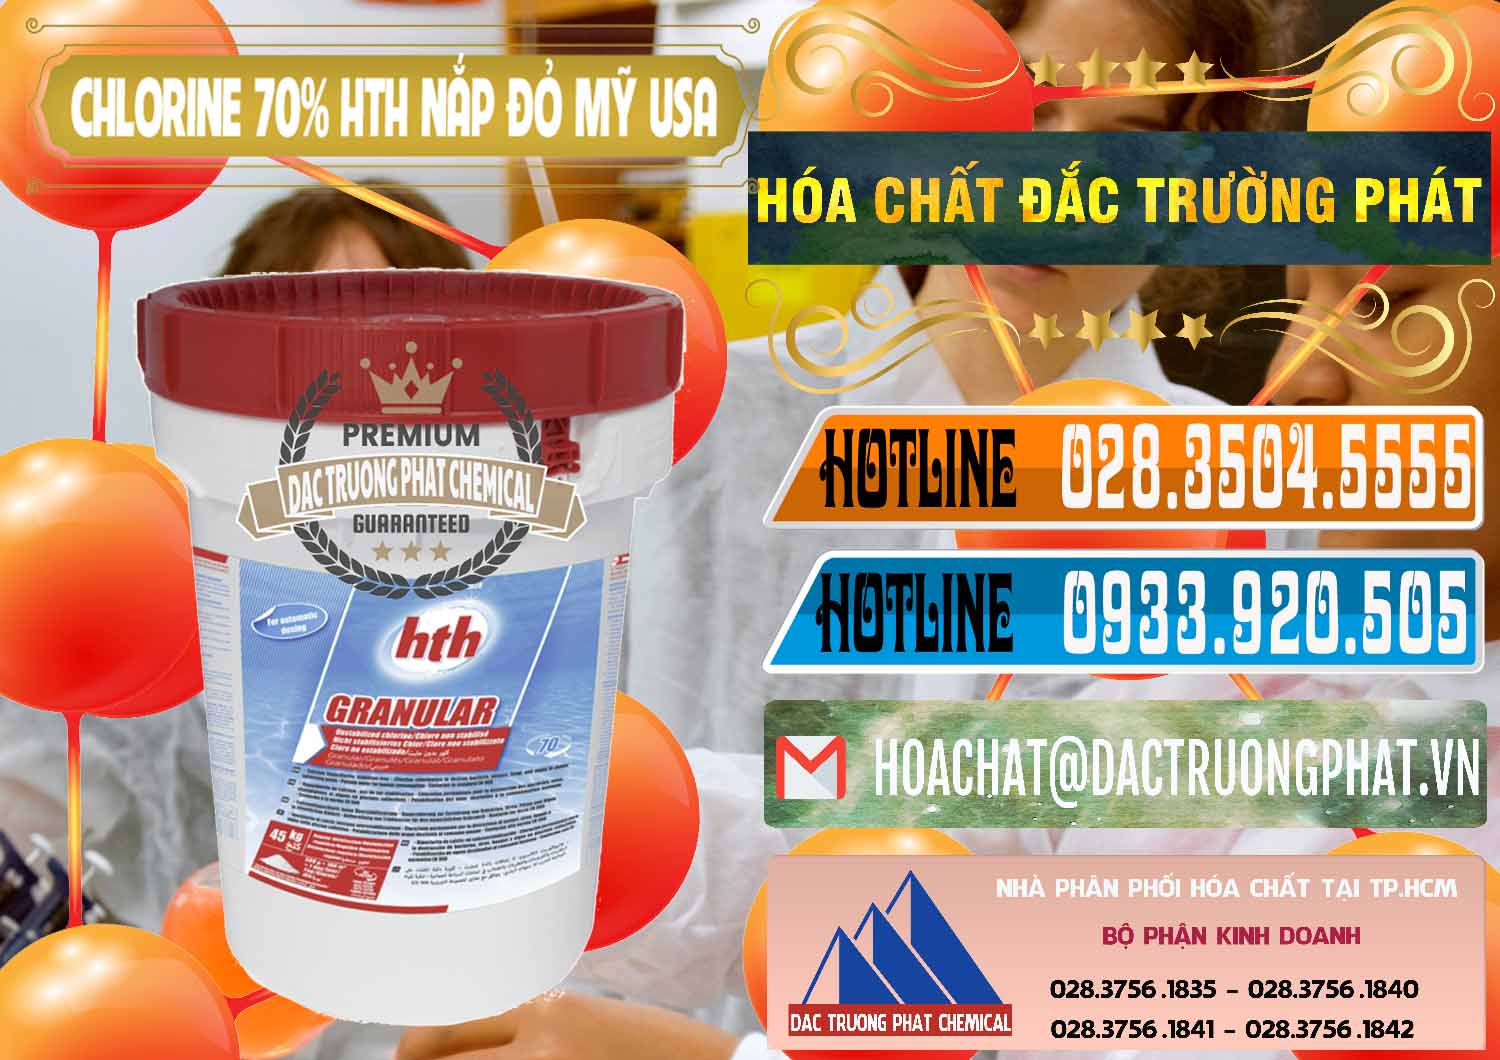 Chuyên cung cấp - bán Clorin – Chlorine 70% HTH Nắp Đỏ Mỹ Usa - 0244 - Nơi chuyên cung cấp - bán hóa chất tại TP.HCM - stmp.net